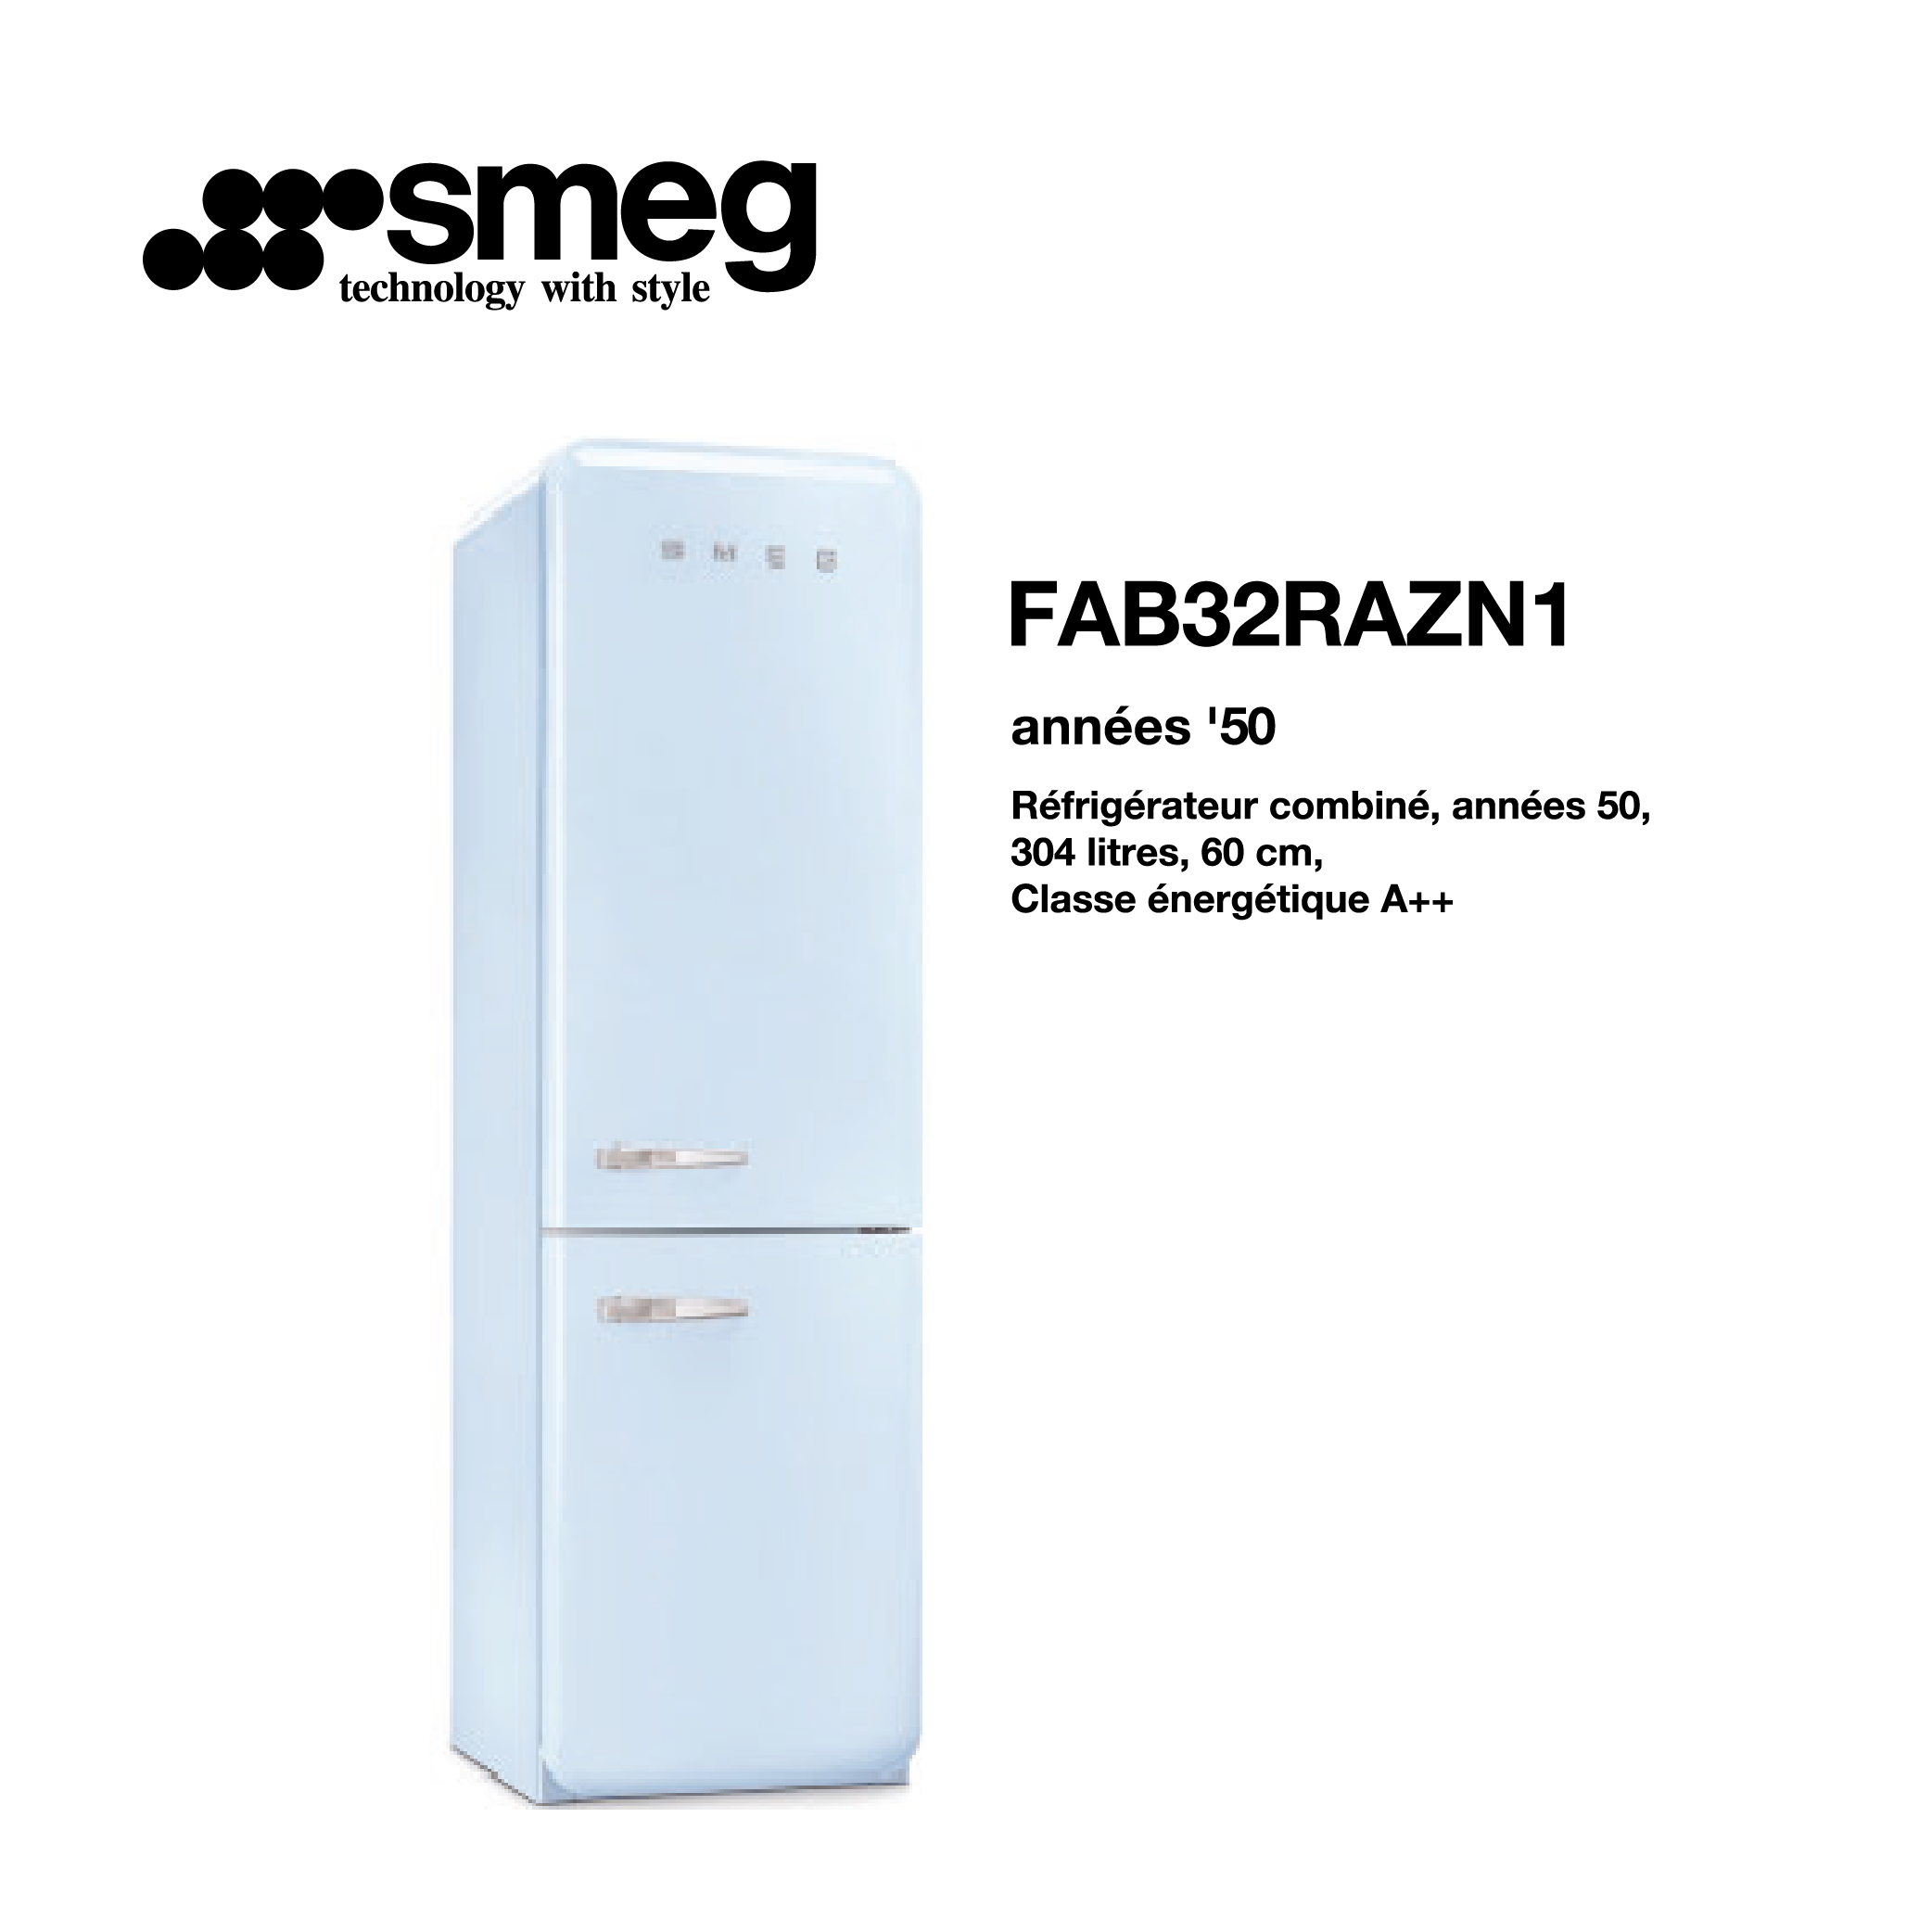 Réfrigérateur combiné smeg 304 litre – 60cm couleur bleu azur FAB32RAZN1